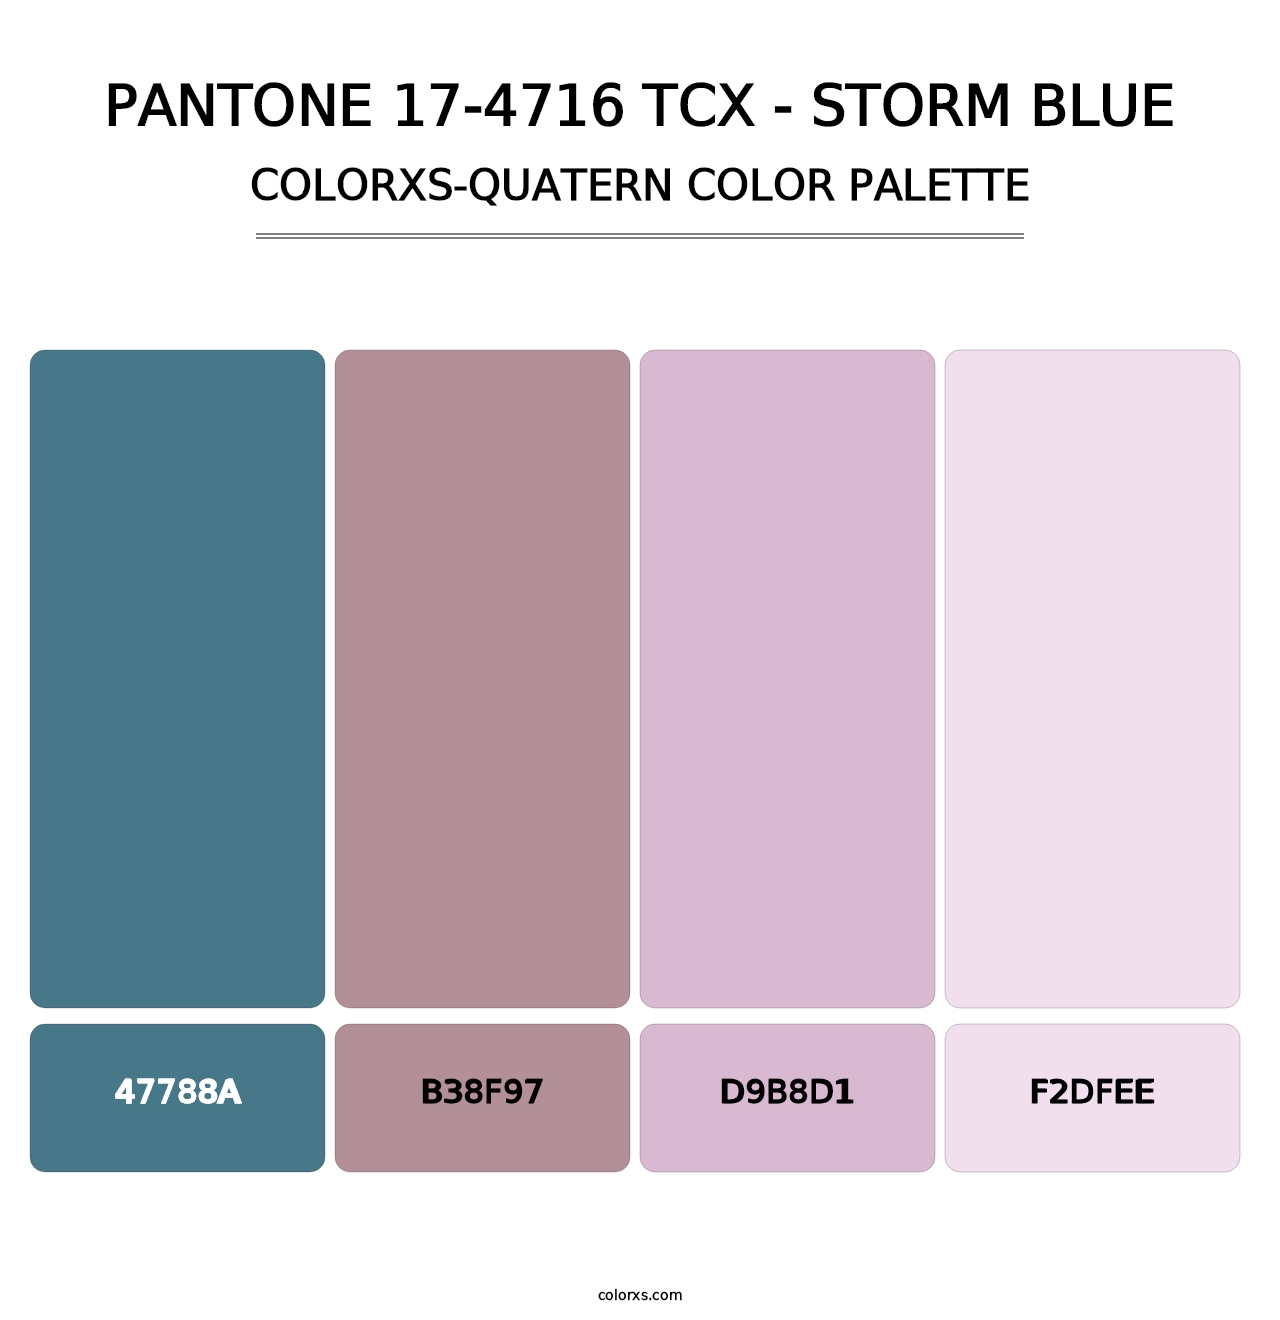 PANTONE 17-4716 TCX - Storm Blue - Colorxs Quatern Palette